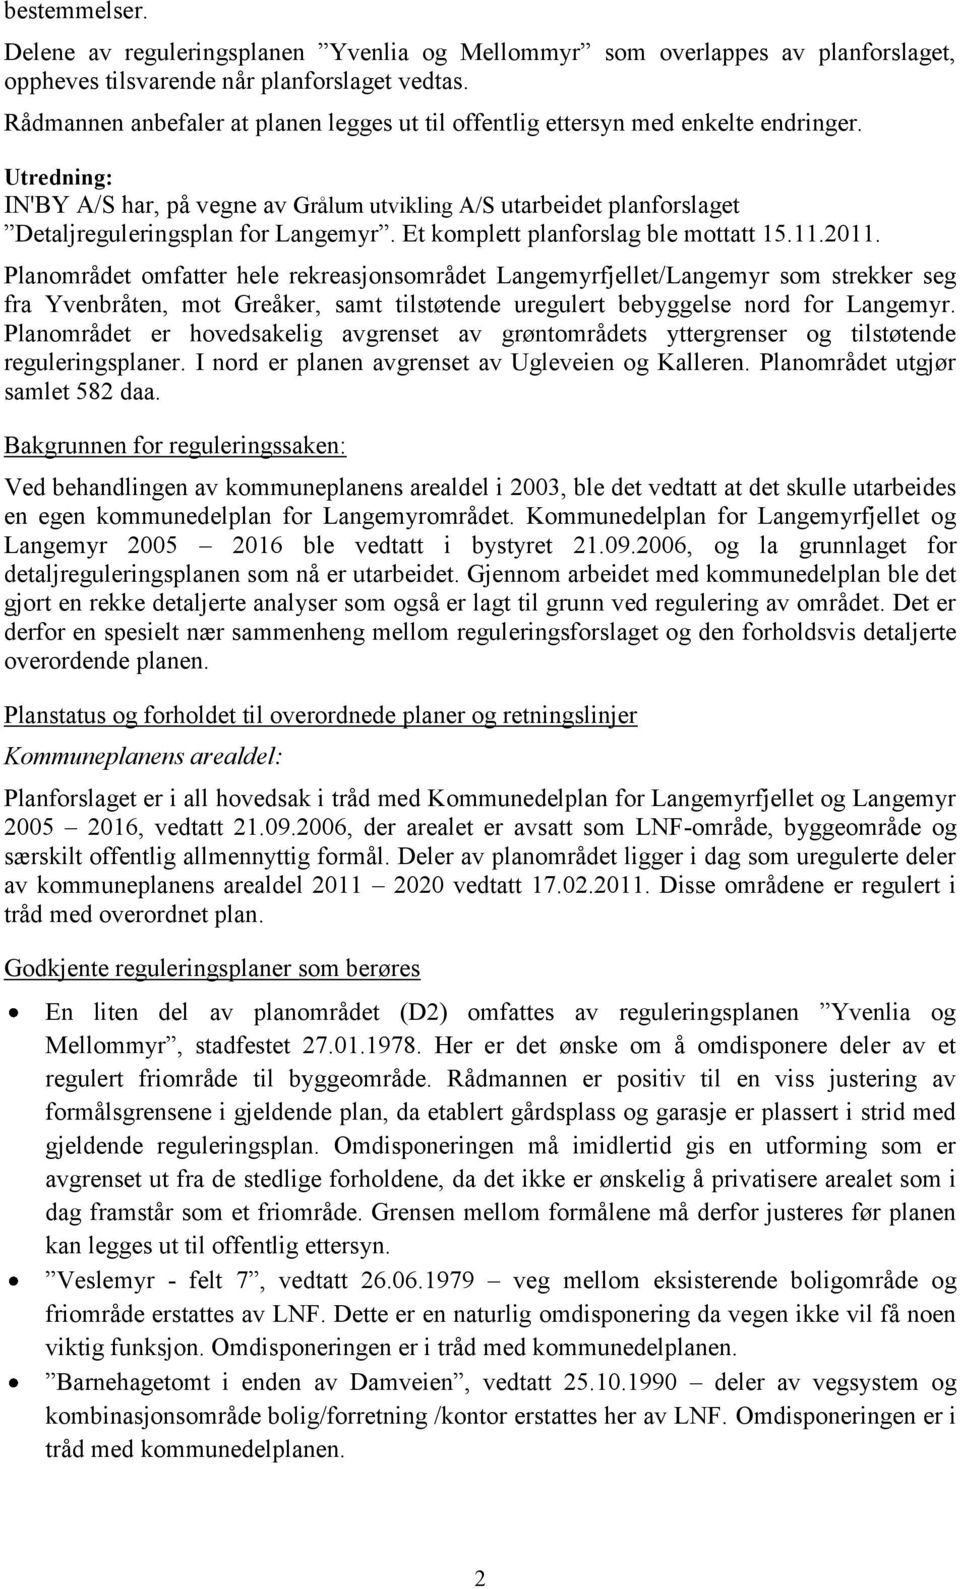 Utredning: IN'BY A/S har, på vegne av Grålum utvikling A/S utarbeidet planforslaget Detaljreguleringsplan for Langemyr. Et komplett planforslag ble mottatt 15.11.2011.